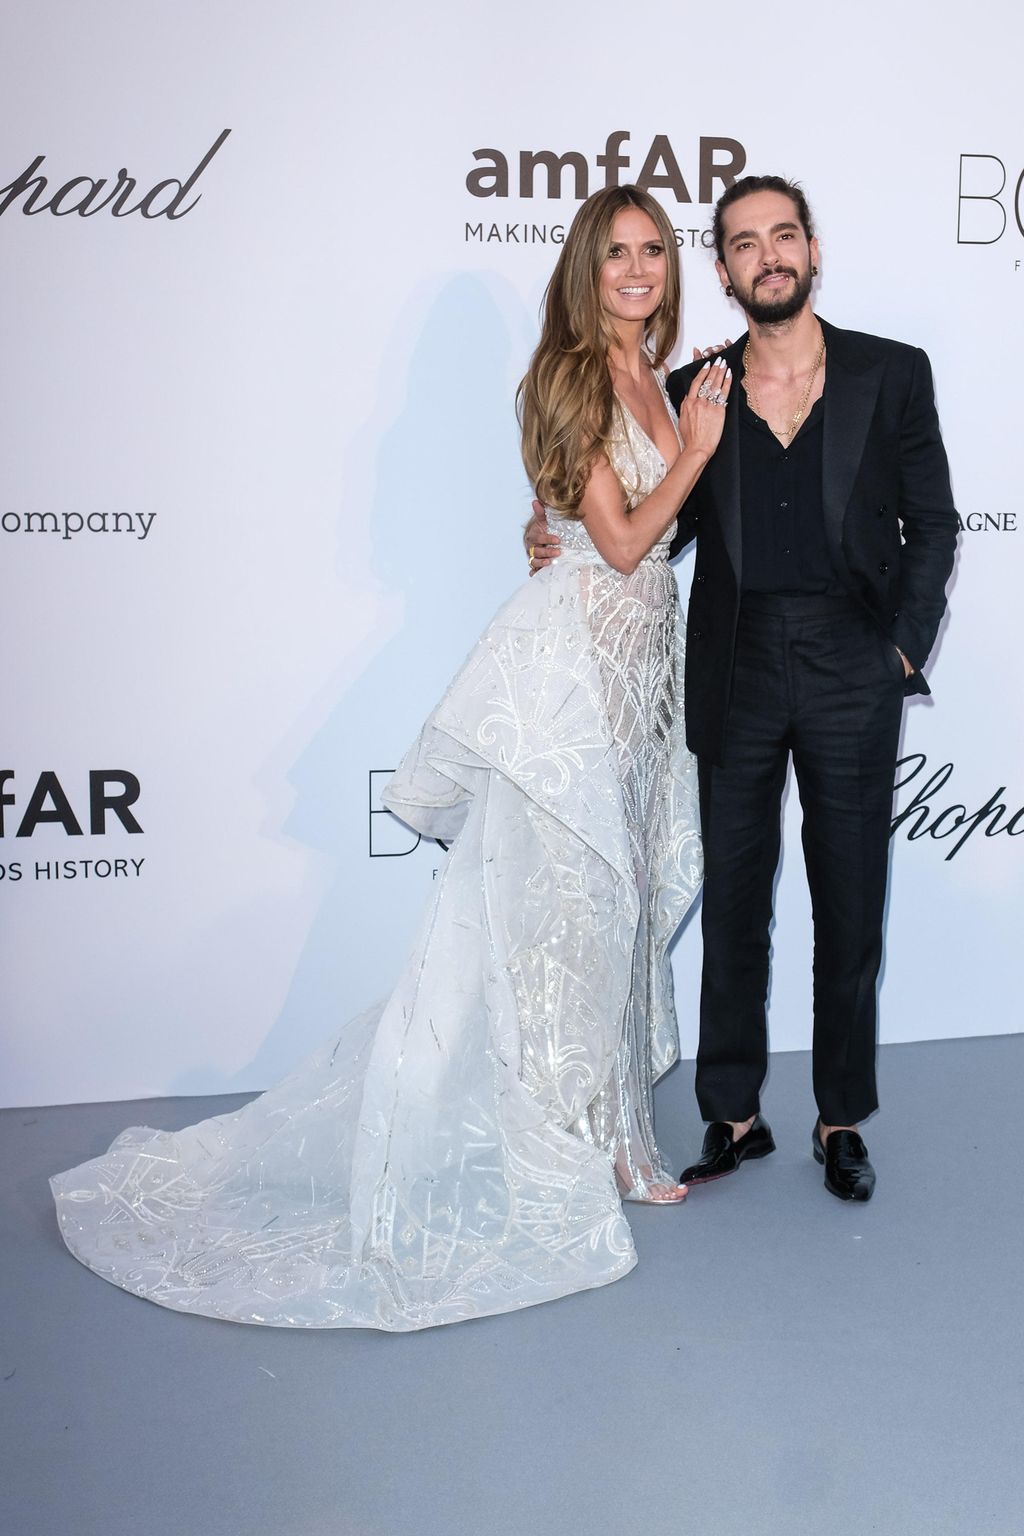 Heidi Klum, 46, ja Tom Kaulitz, 29, järjestivät toiset häät Italiassa: Mallikaunotar julkaisi romanttisen suutelukuvan ökyjuhlistaan